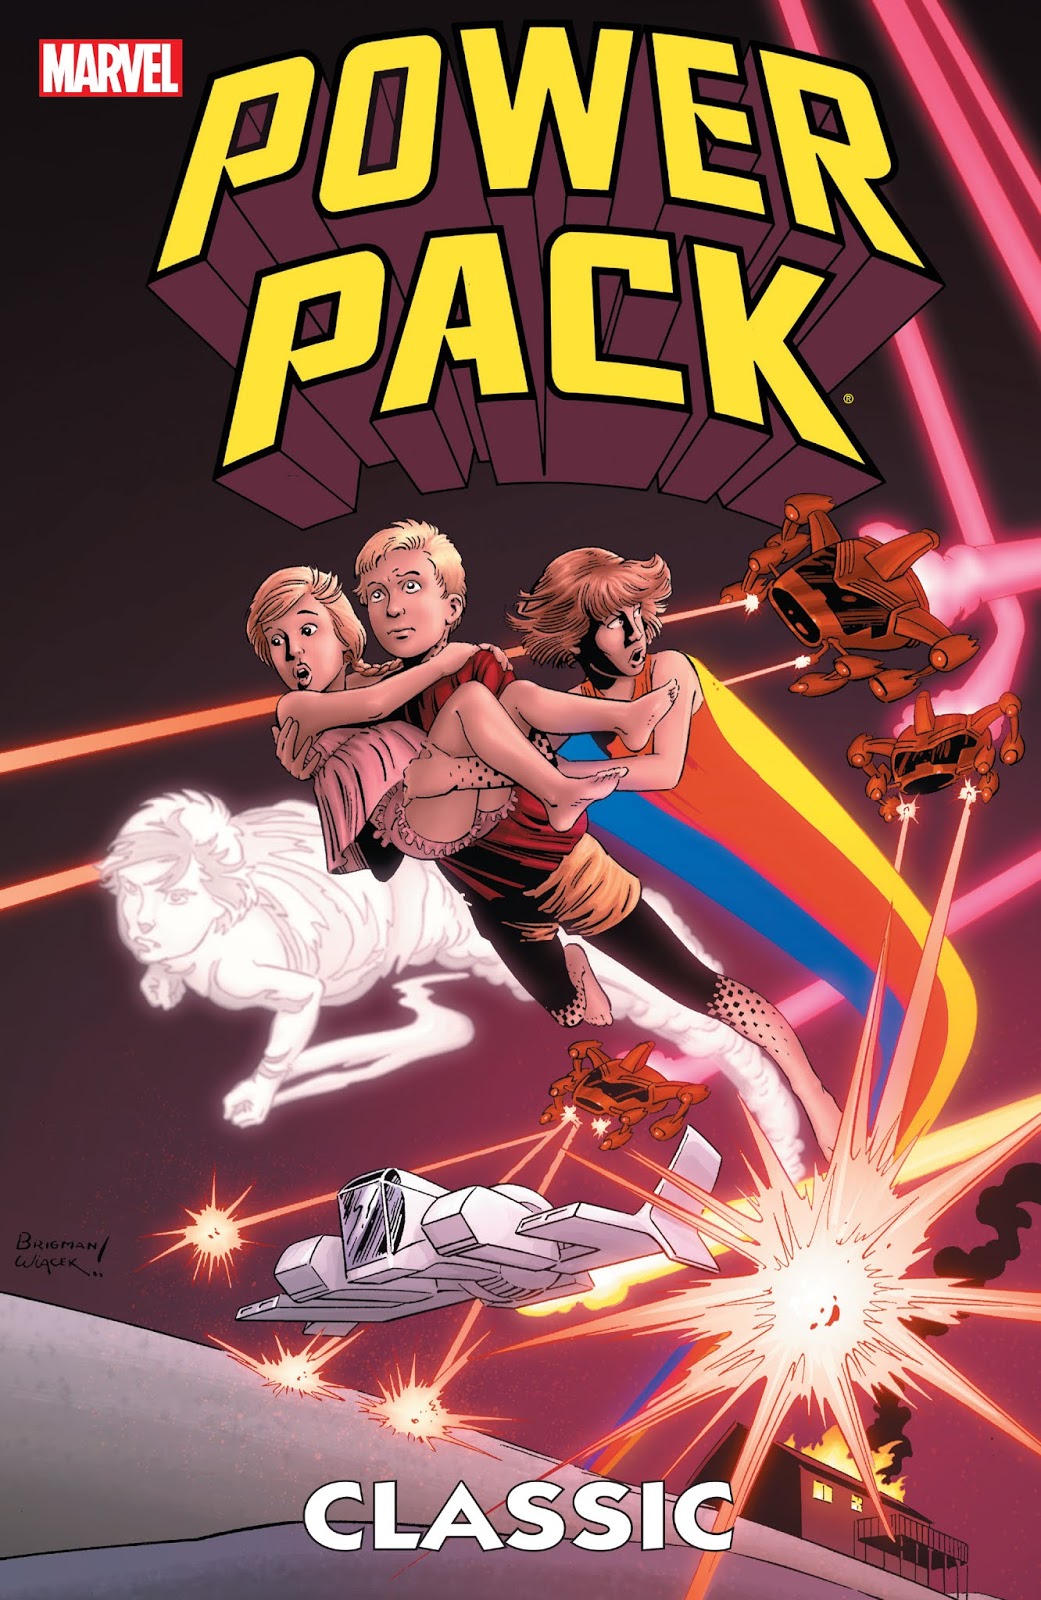 Power Pack Art